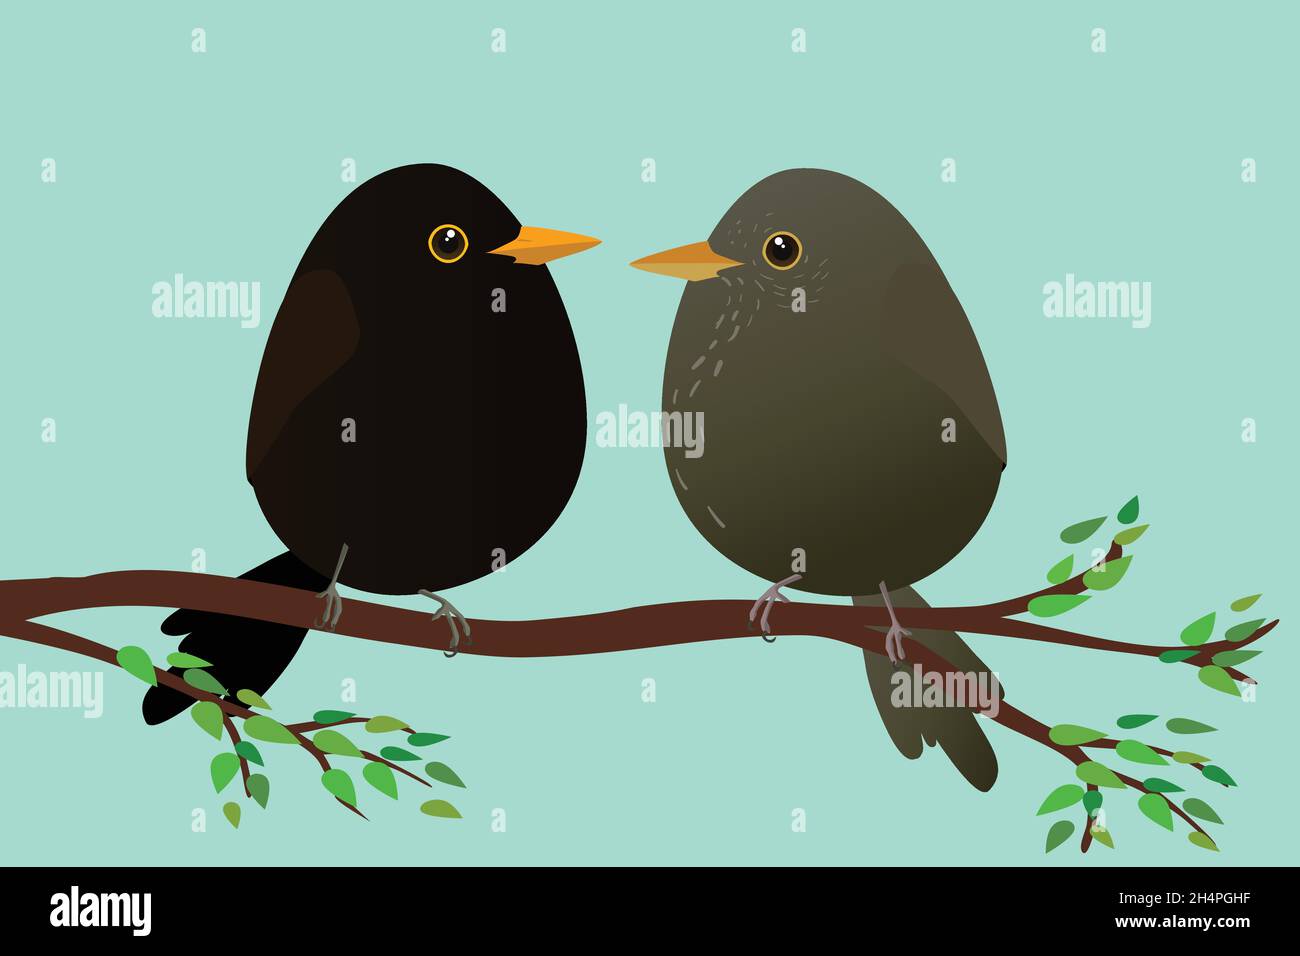 Una femmina molto carina e un maschio Blackbirds a forma di uovo. Sfondo verde-blu. Gli uccelli sono seduti su un ramo con foglie verdi. Illustrazione Vettoriale